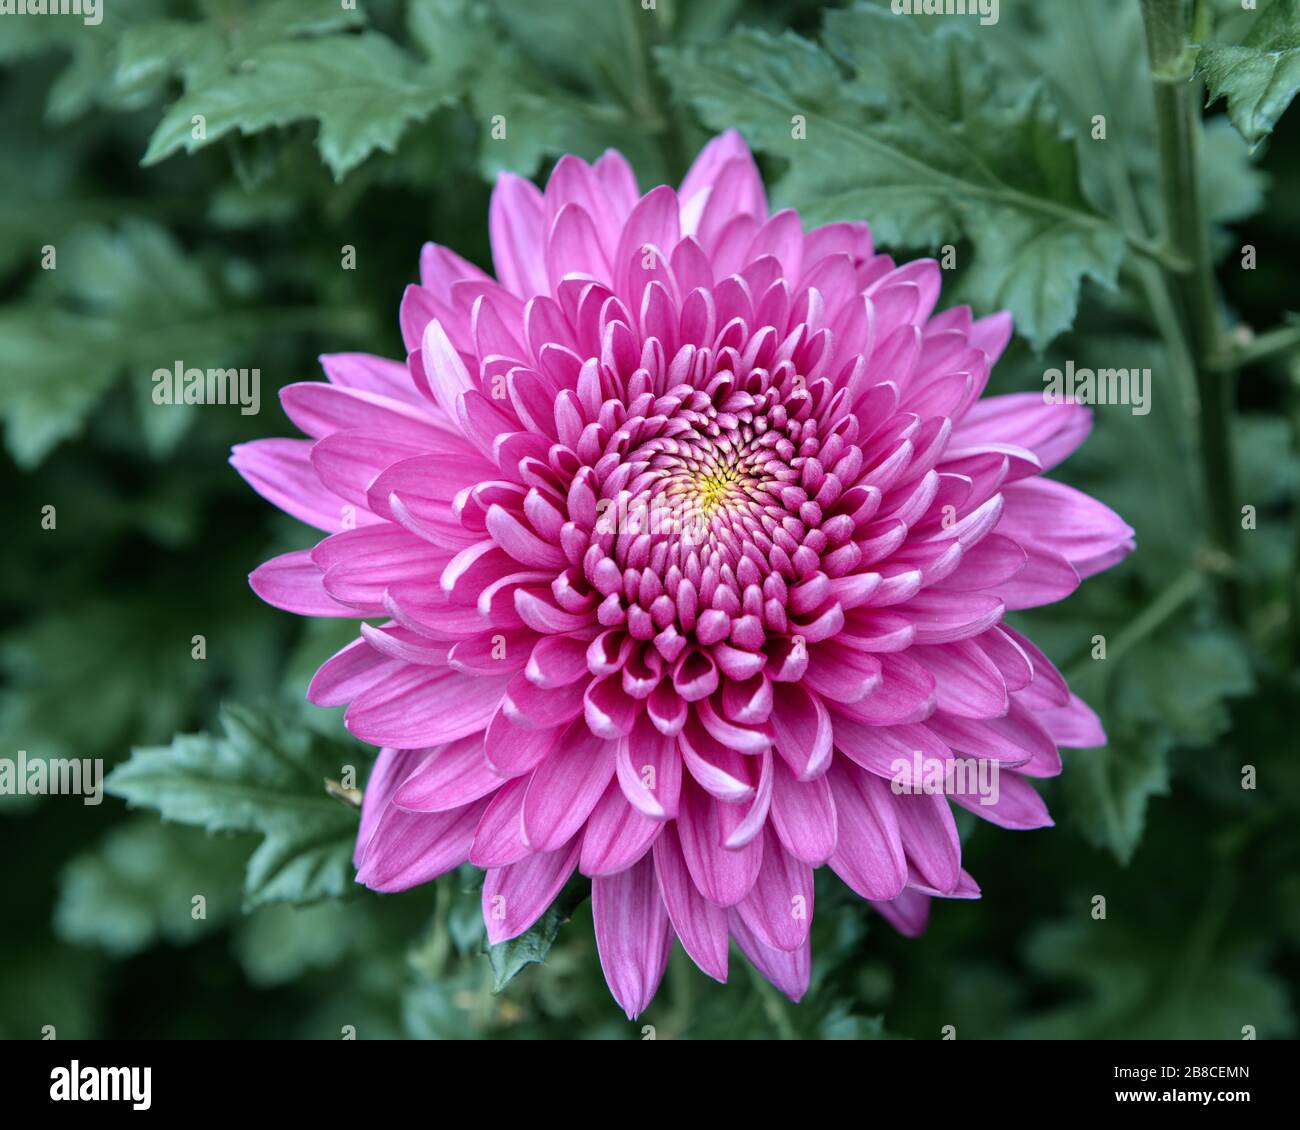 Tête de fleur de chrysanthème rose vif et lumineux avec des étamines jaunes et des feuilles vertes floues en arrière-plan. Banque D'Images